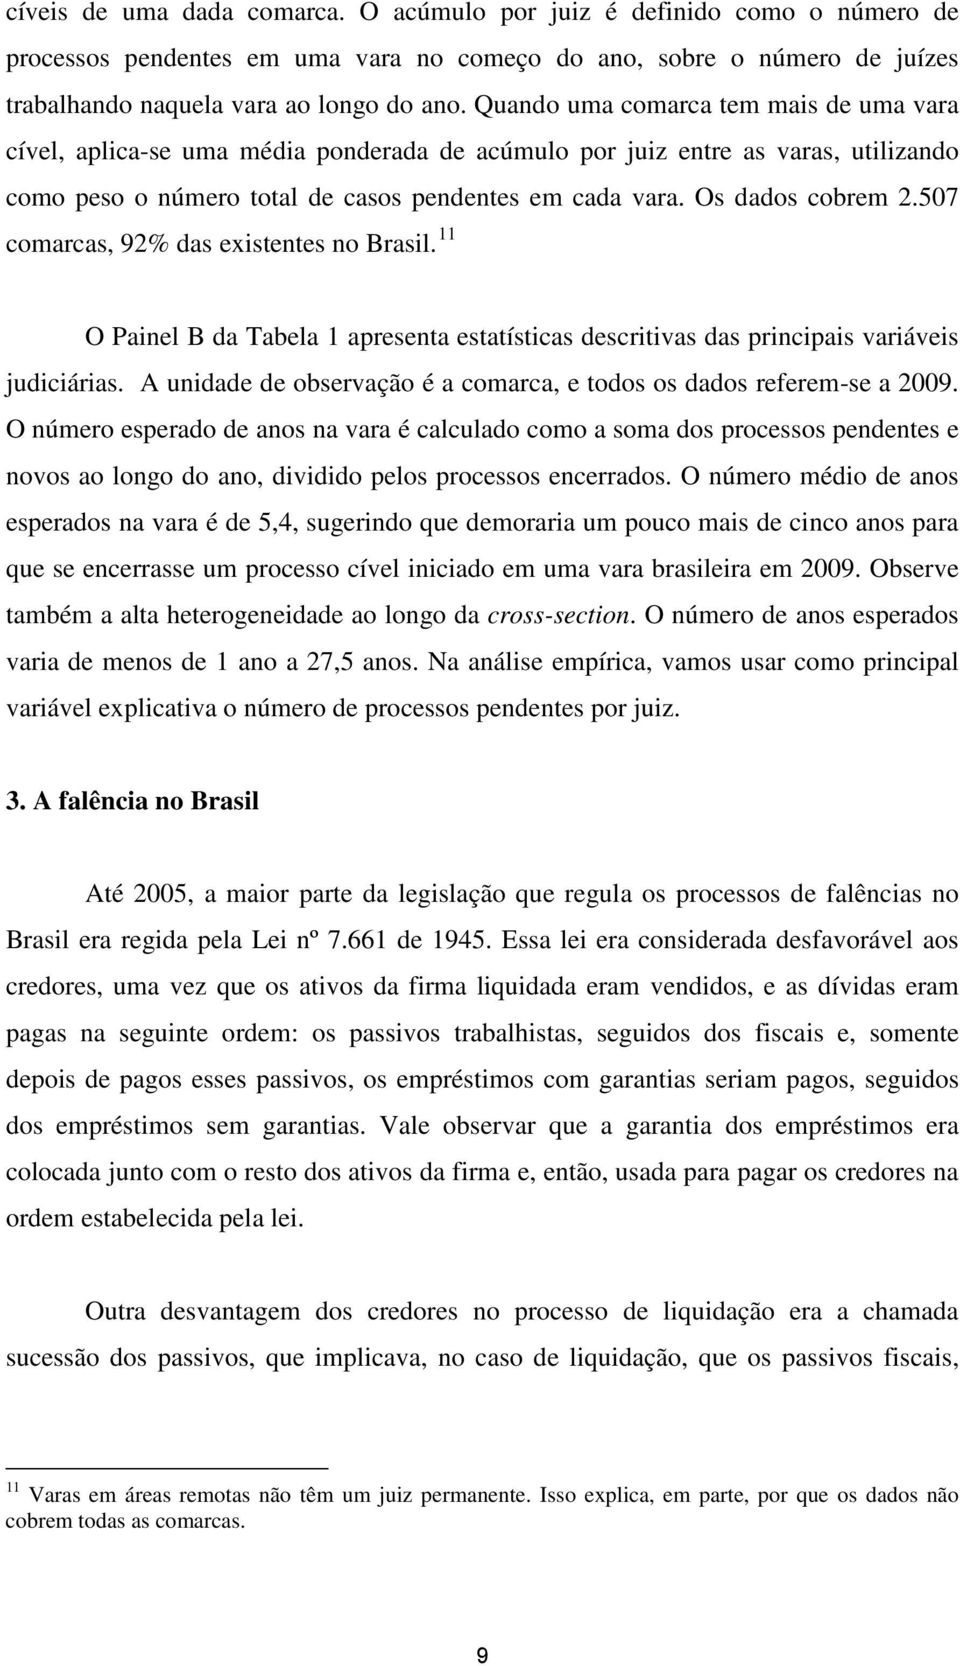 507 comarcas, 92% das existentes no Brasil. 11 O Painel B da Tabela 1 apresenta estatísticas descritivas das principais variáveis judiciárias.